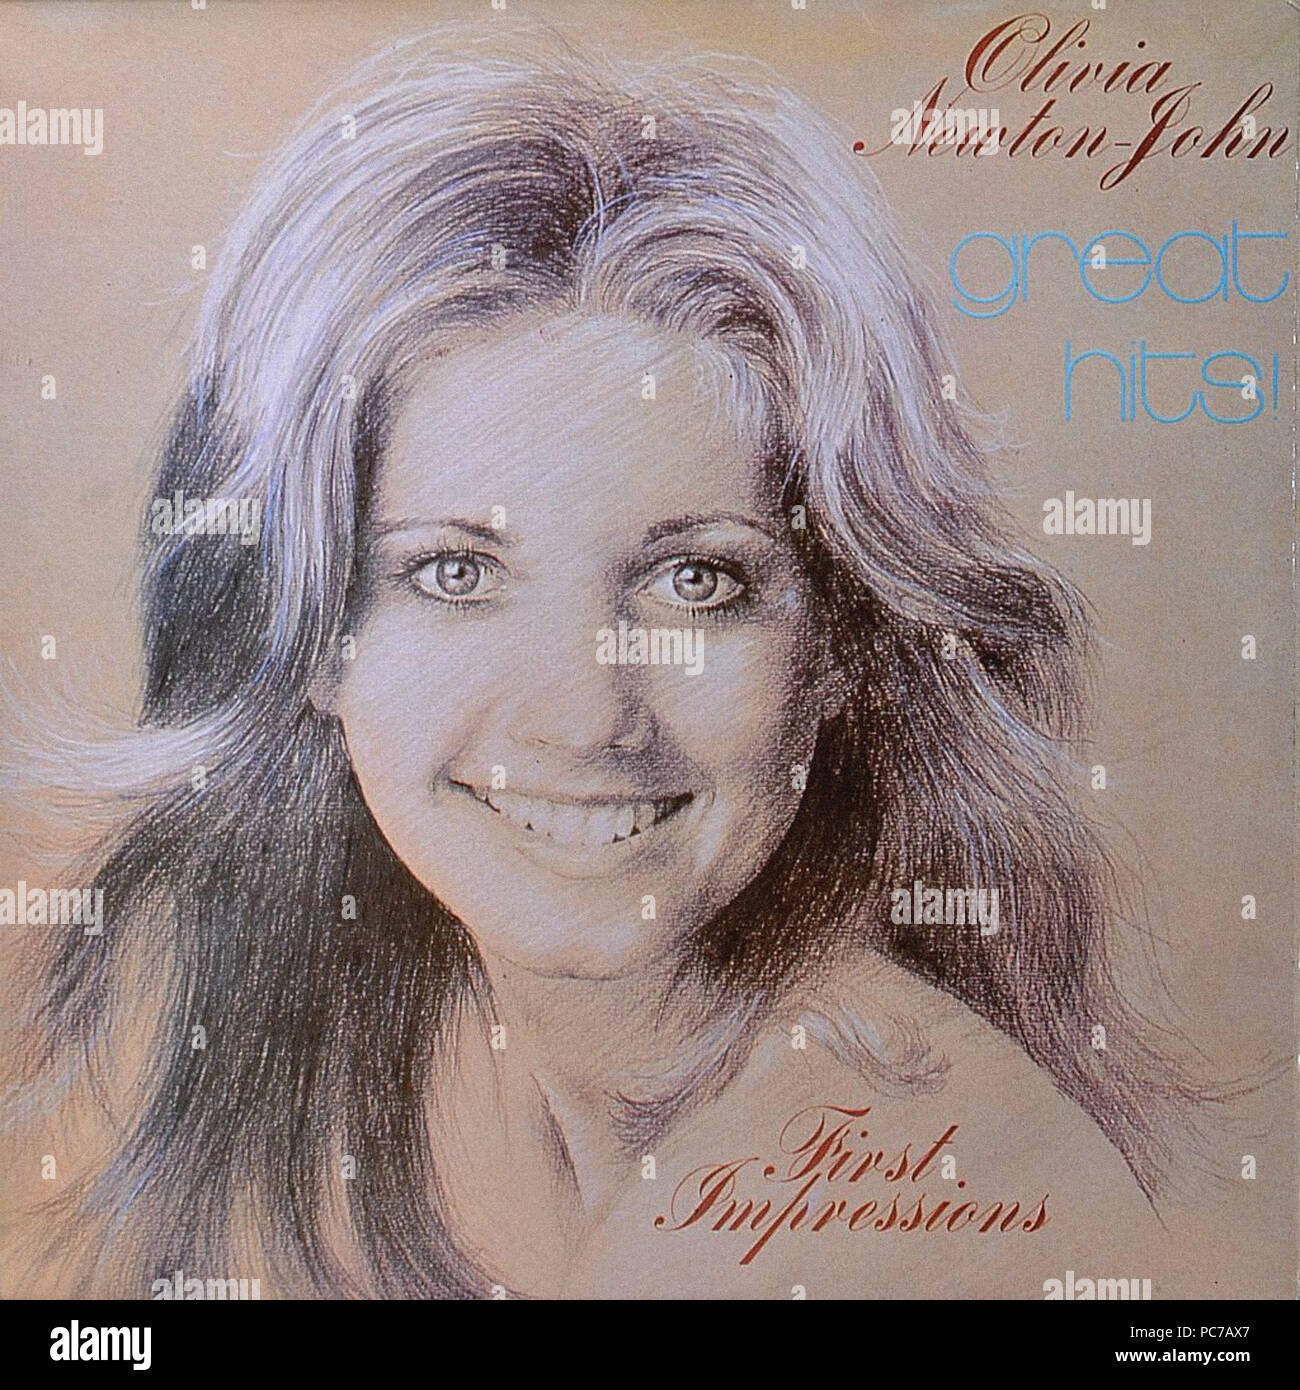 Olivia Newton John - Erste Eindrücke - Vintage Vinyl Album Cover Stockfoto